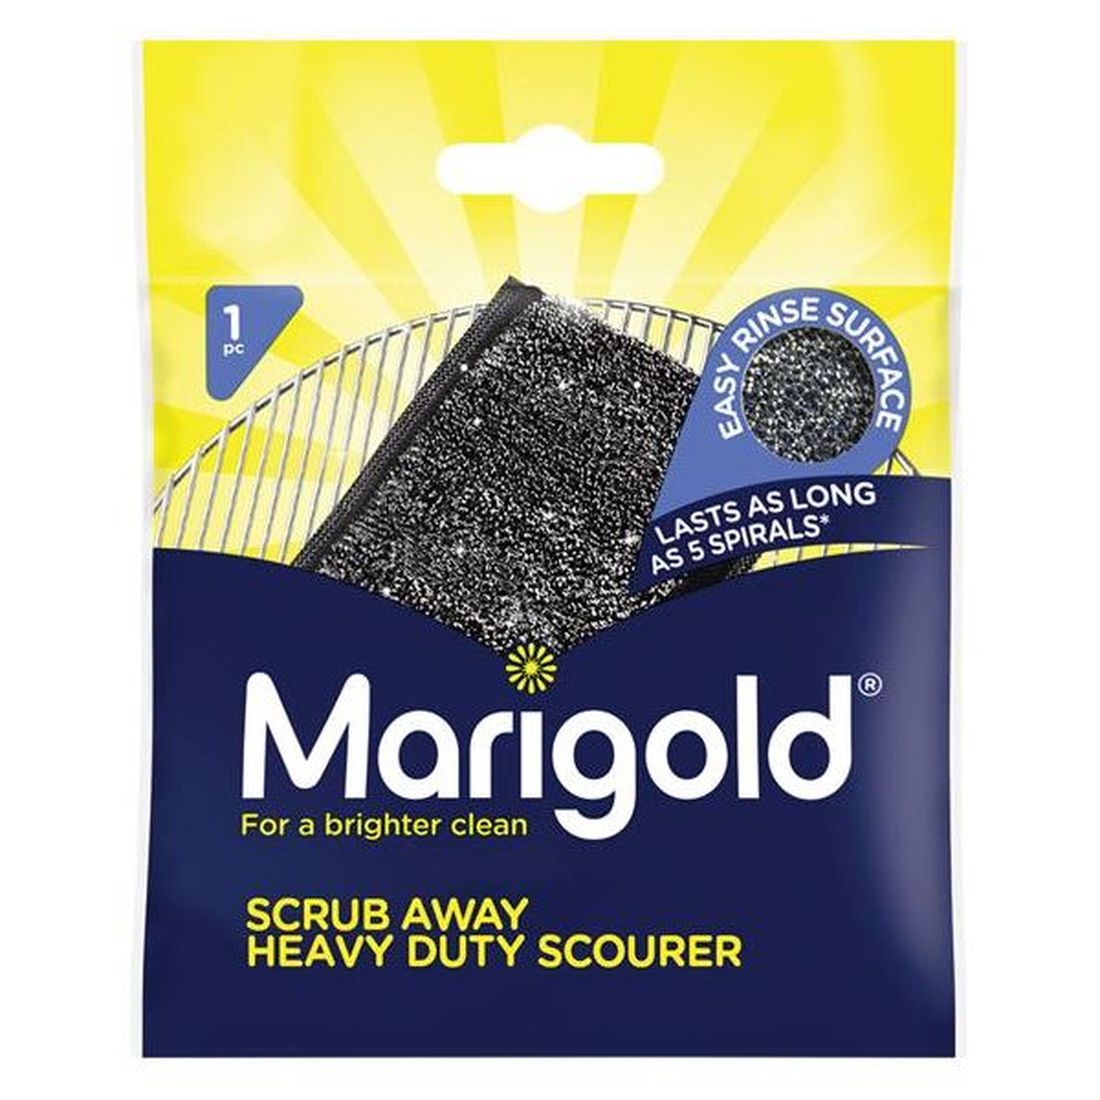 Marigold Scrub Away Heavy-Duty Scourer x 1 